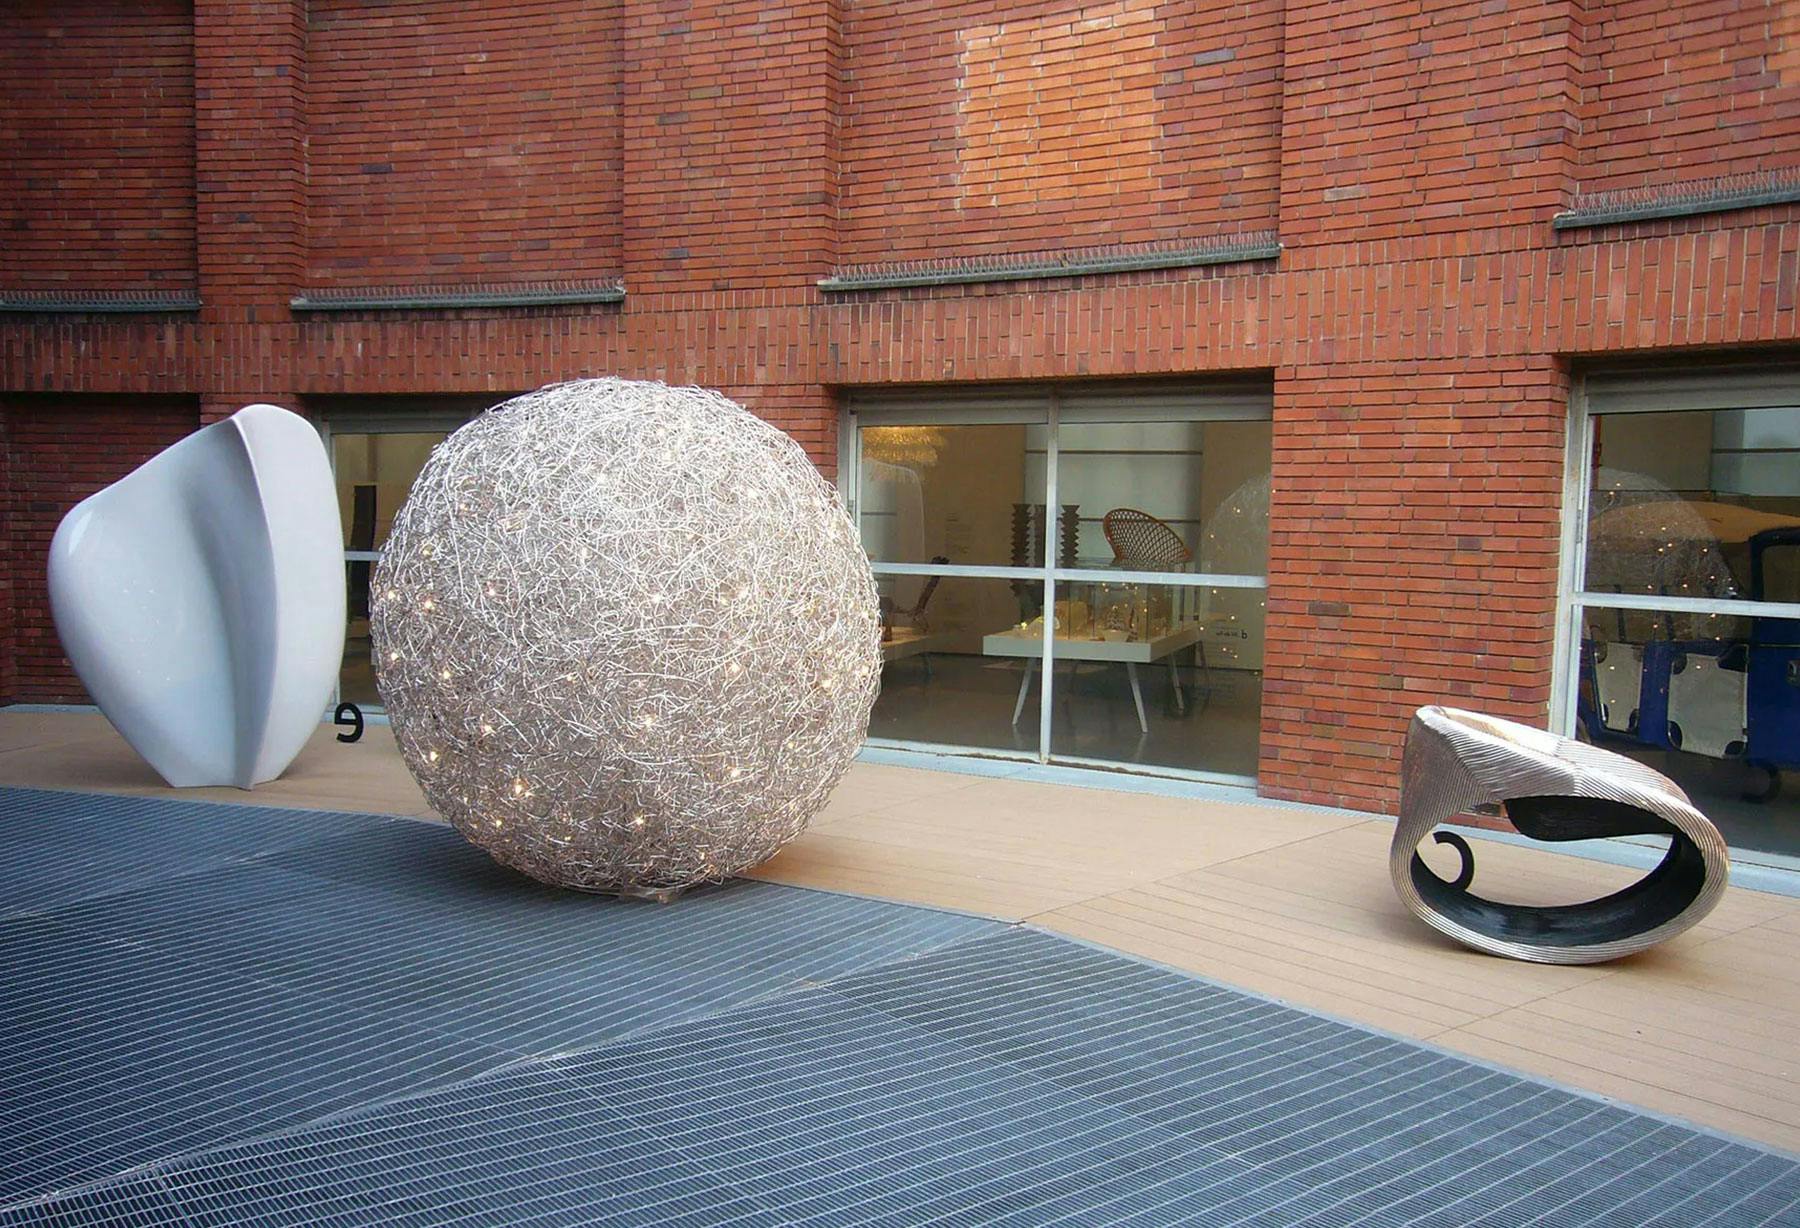 <p>À la Triennale de Milan, pour l’exposition Triennale Serie Fuori Serie, une énorme pelote de fil d’aluminium agrémentée de nombreux points lumineux apparaît, telle une lampe cosmique qui ressemblerait à un univers possible.</p>
